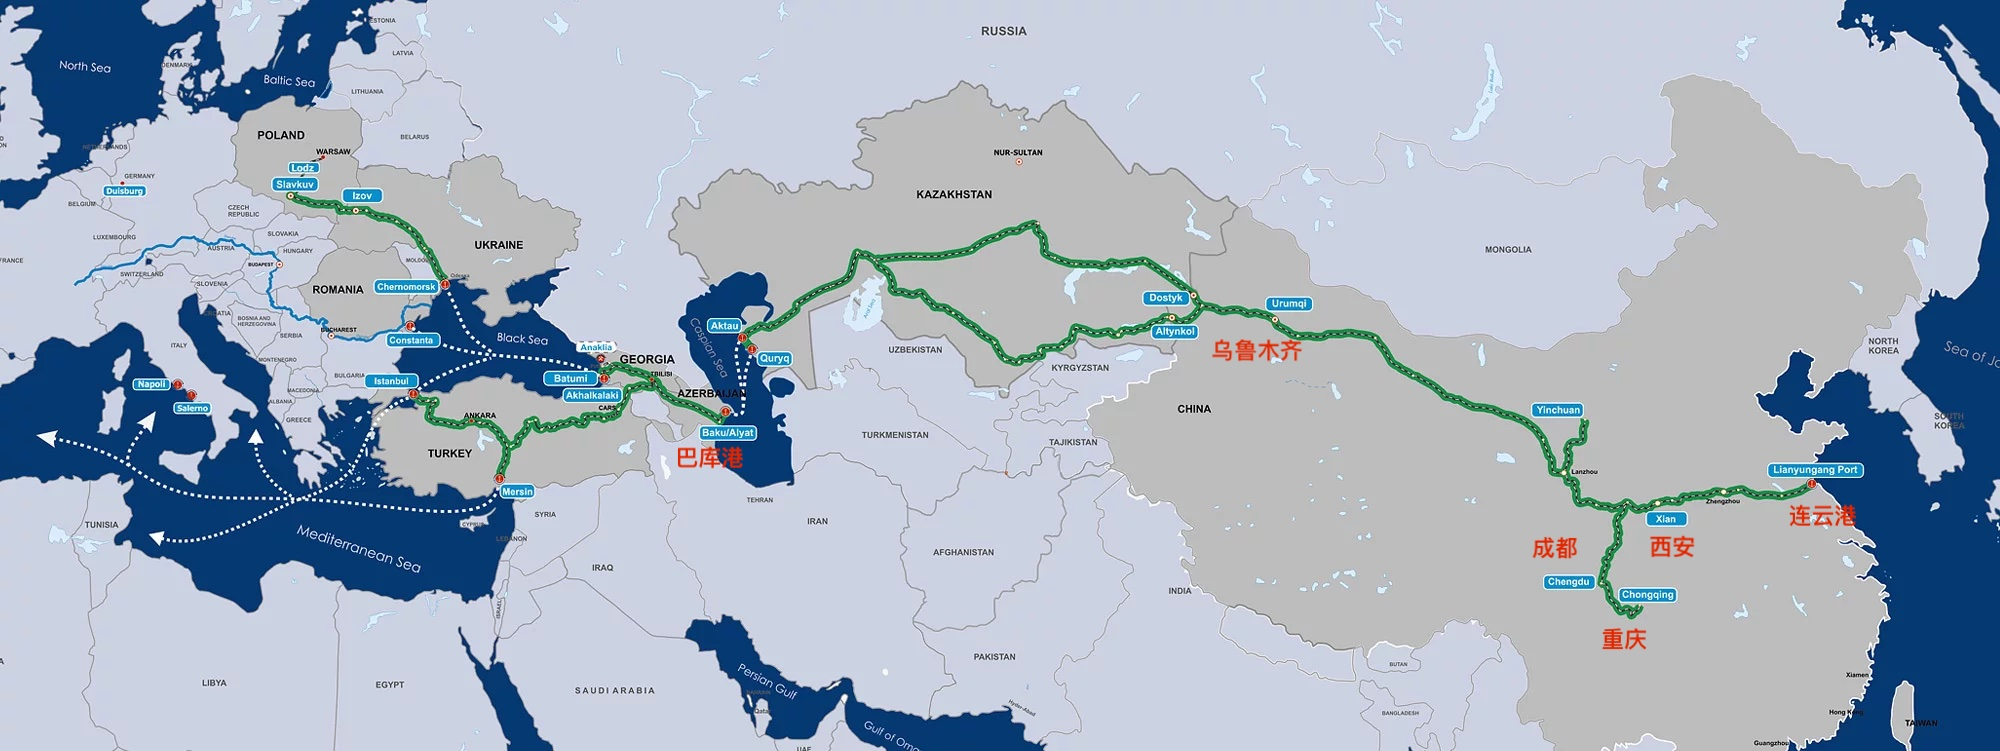 中国到欧洲和俄罗斯的第六个集运中心开始运行